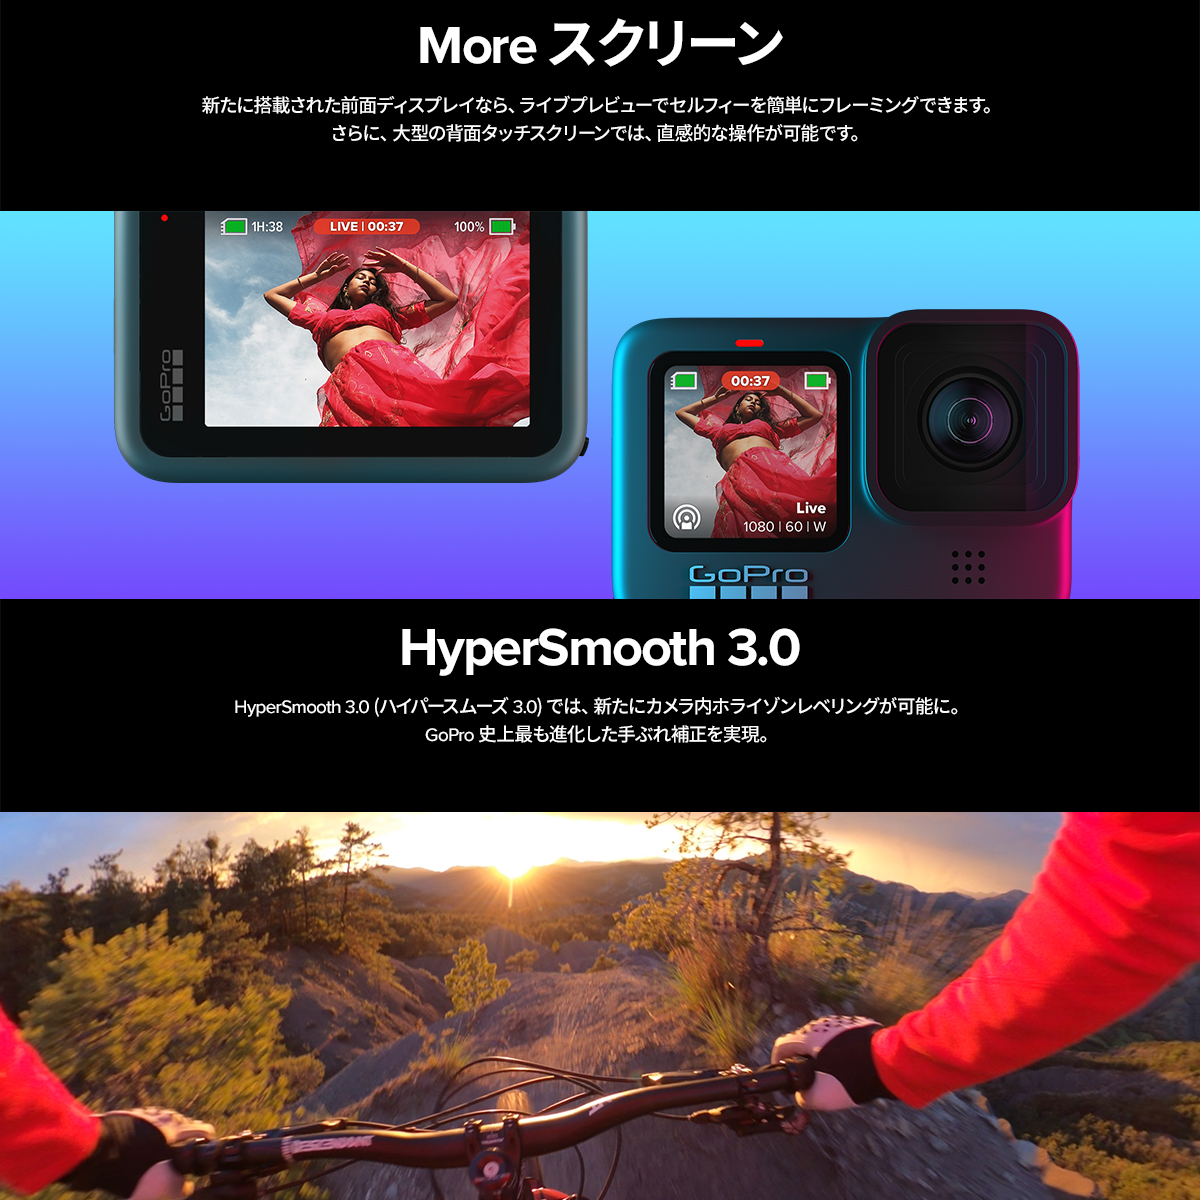 20個セット送料込 GoPro公式限定 GoPro HERO9 Black 限定バンドル + 非売品ステッカー 国内正規品 ゴープロ  納期情報納期未定|カメラ - iato.in